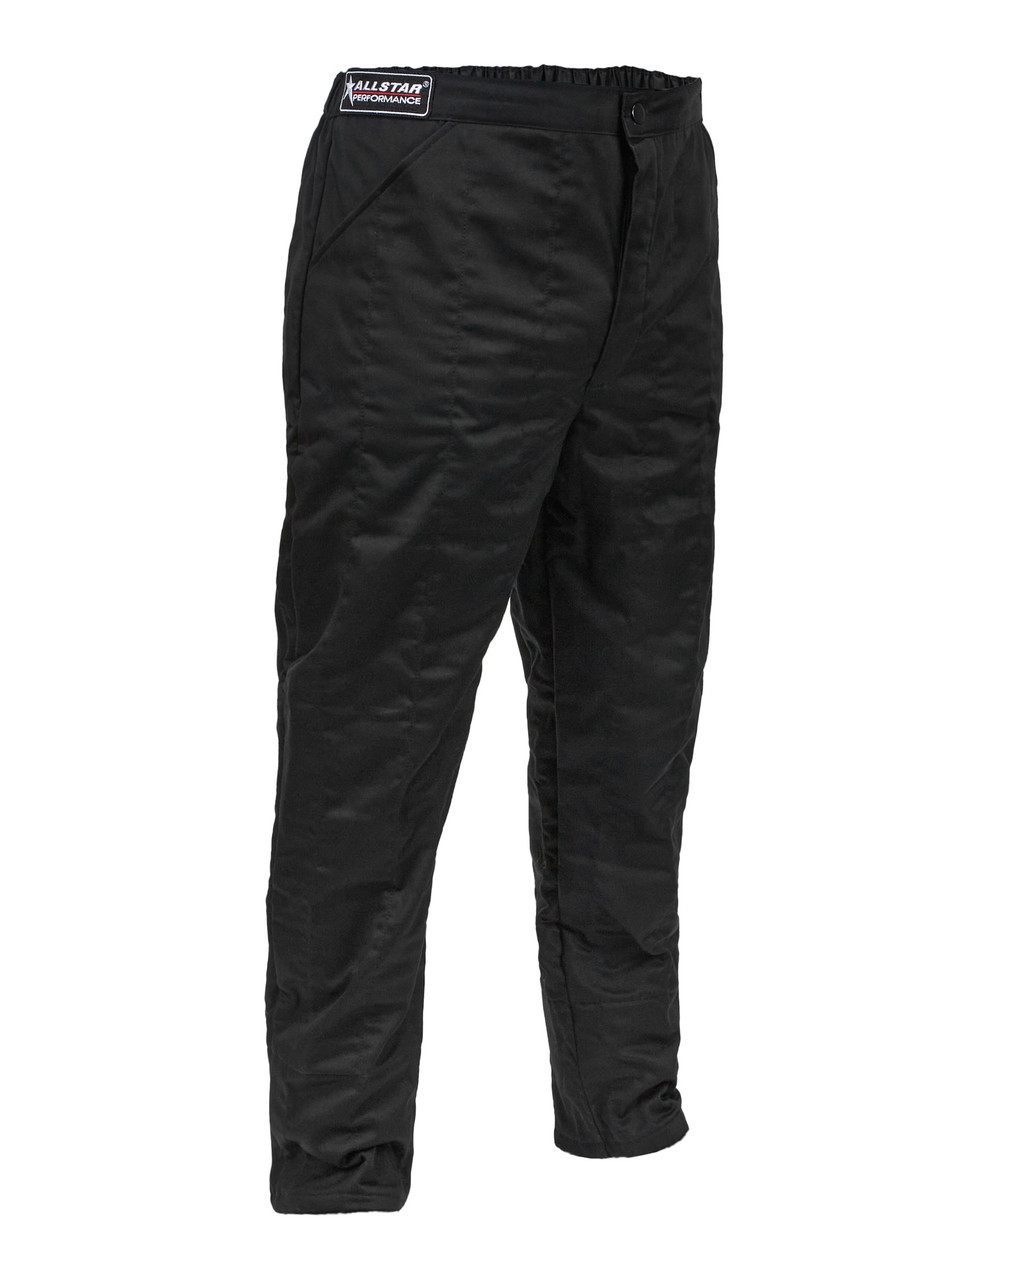 Racing Pants SFI 3.2A/5 M/L Black Medium Tall